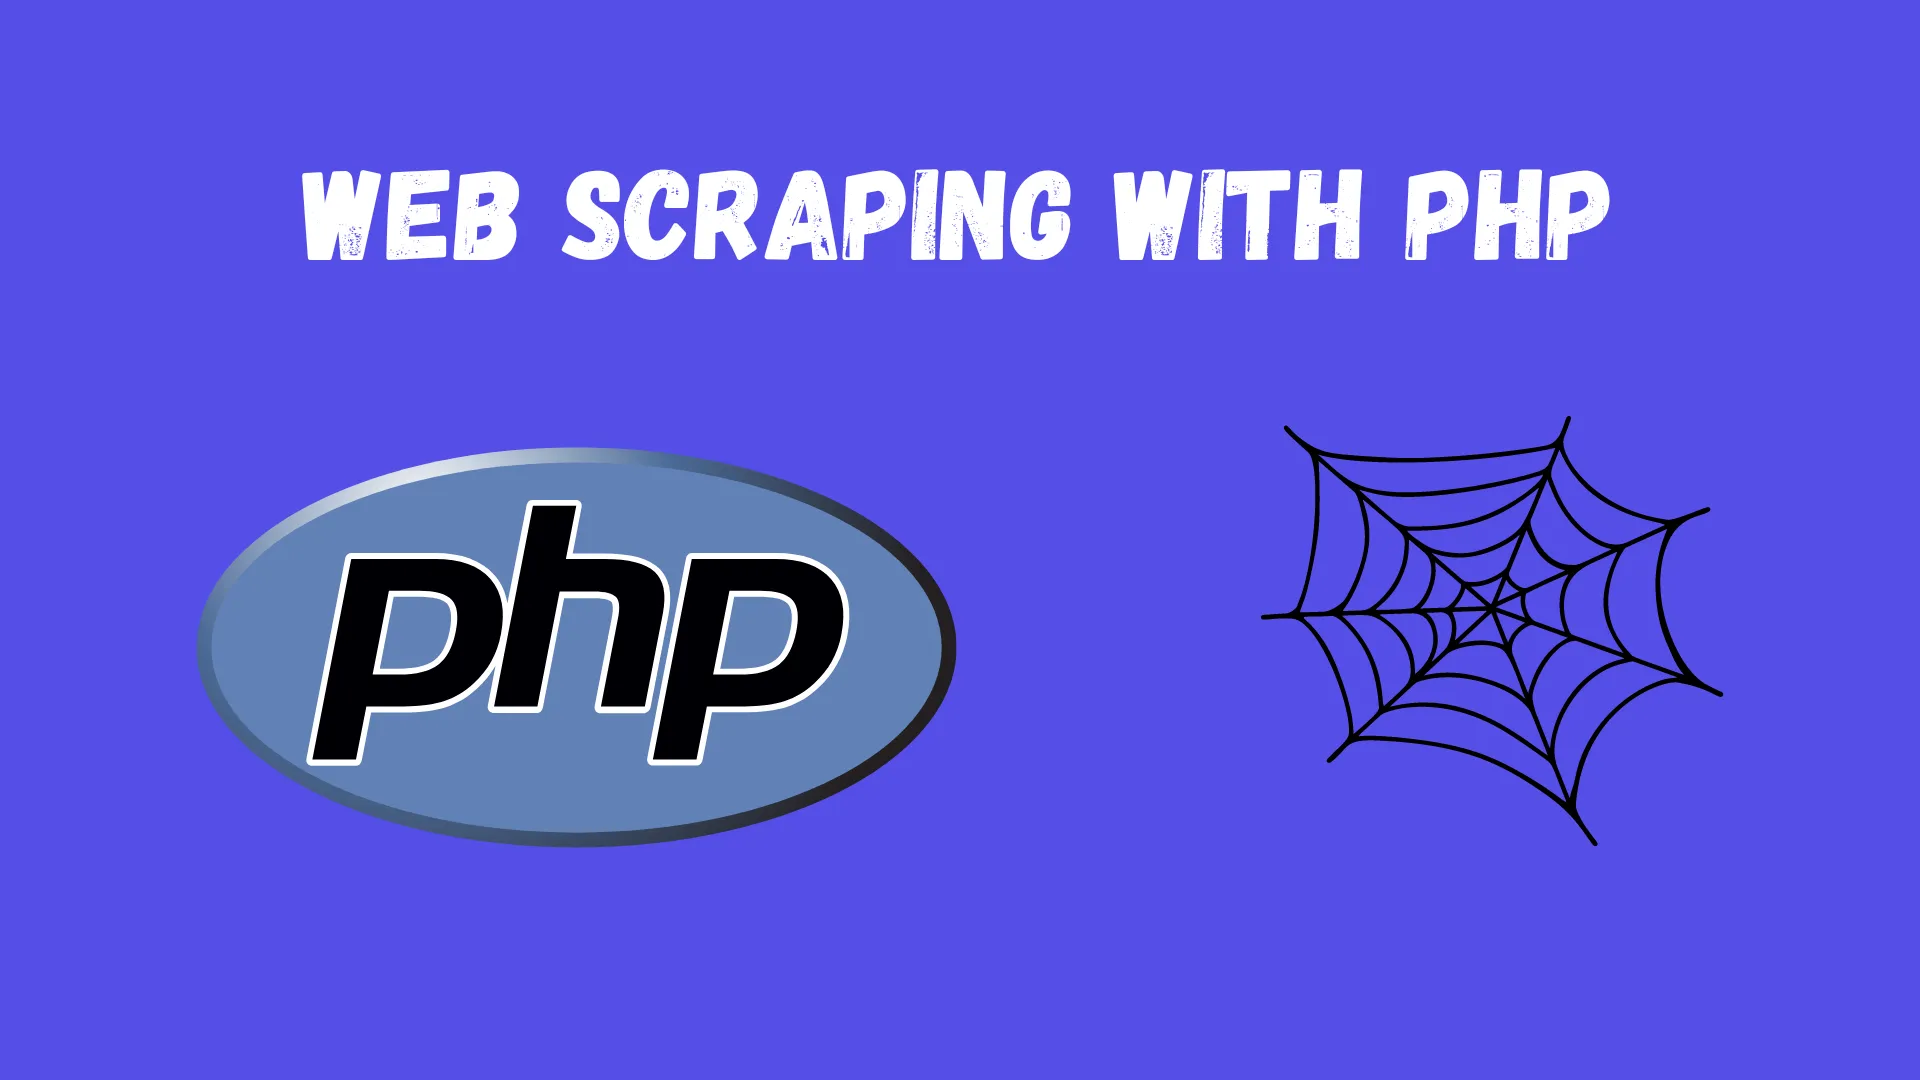 Php ile web kazıma nedir?